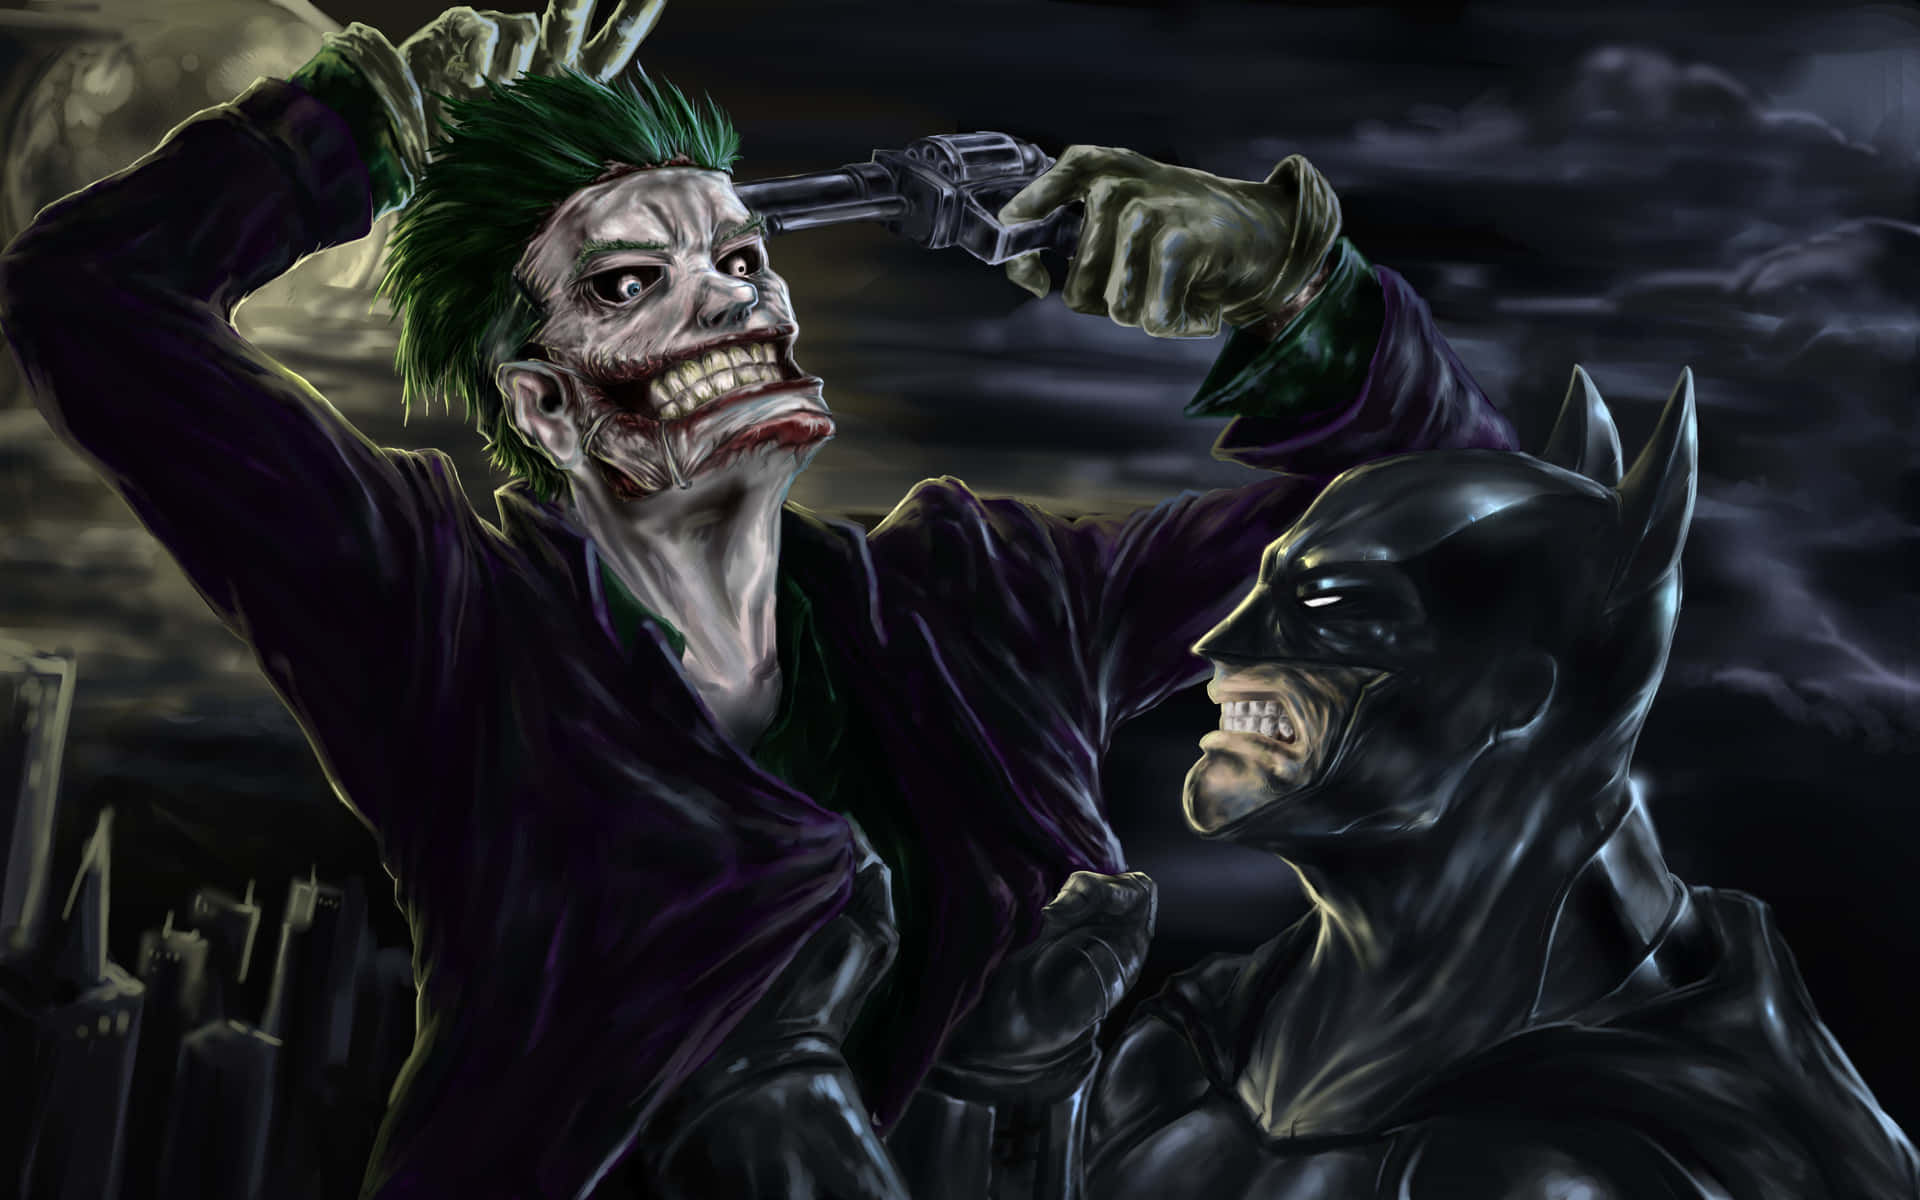 The Sinister Joker - Comic-style Illustration Wallpaper